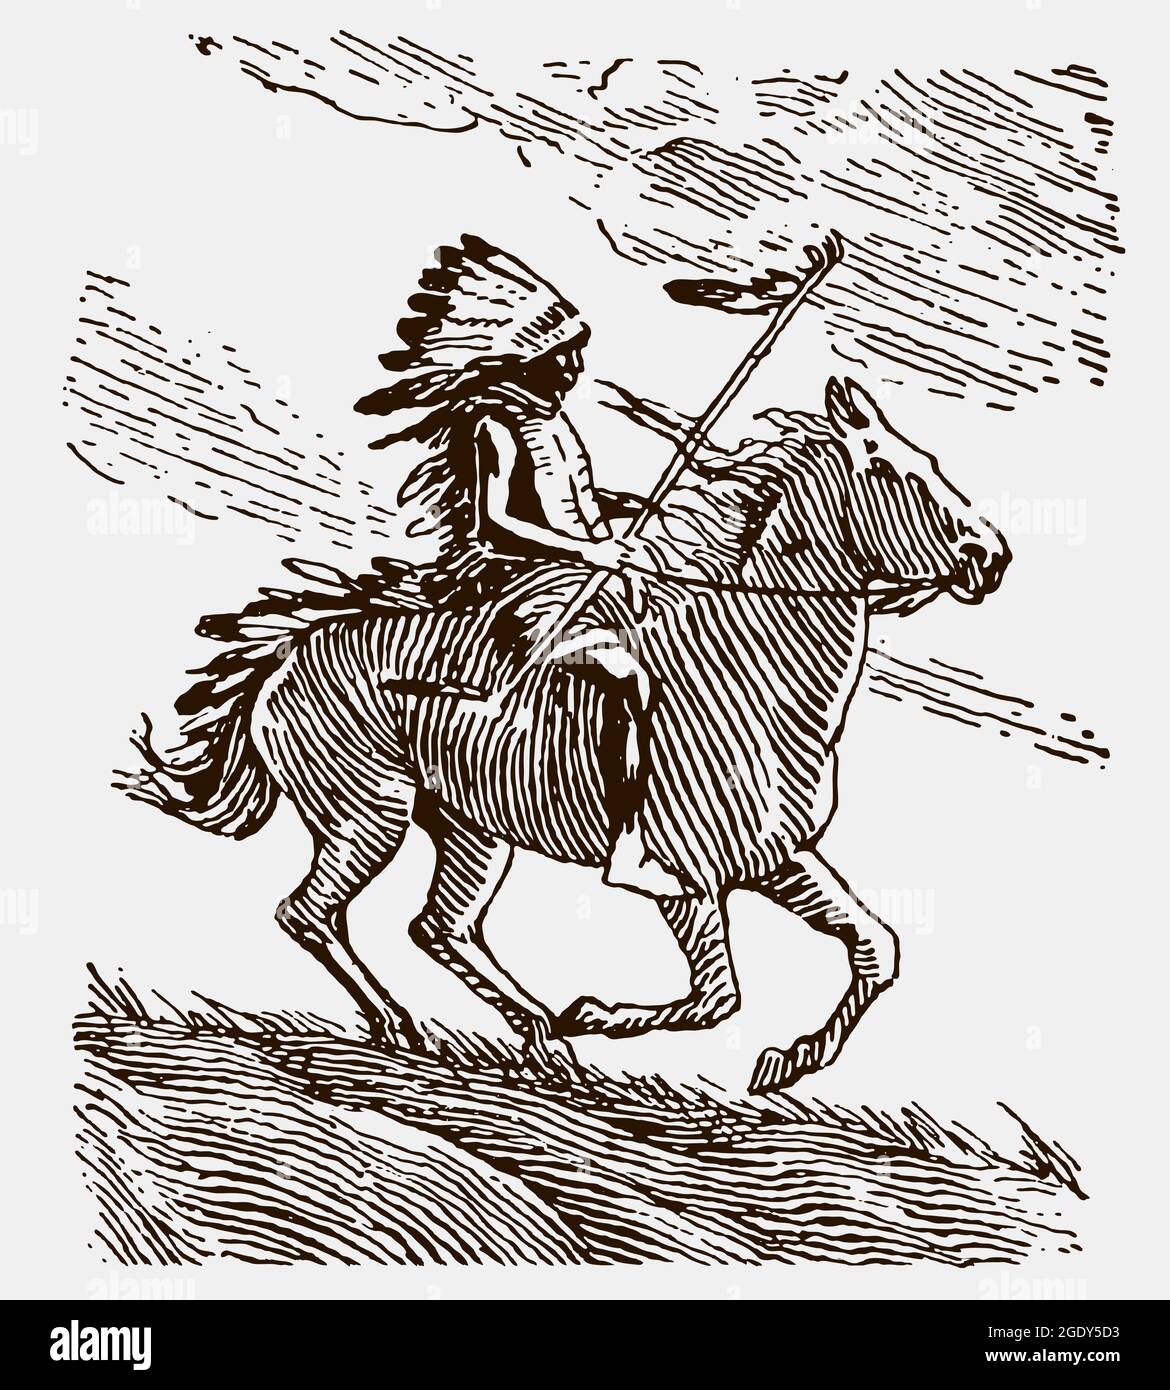 Un chef de guerre historique aux plumes, à cheval sur un cheval galopant. Illustration après gravure antique du début 20c Illustration de Vecteur